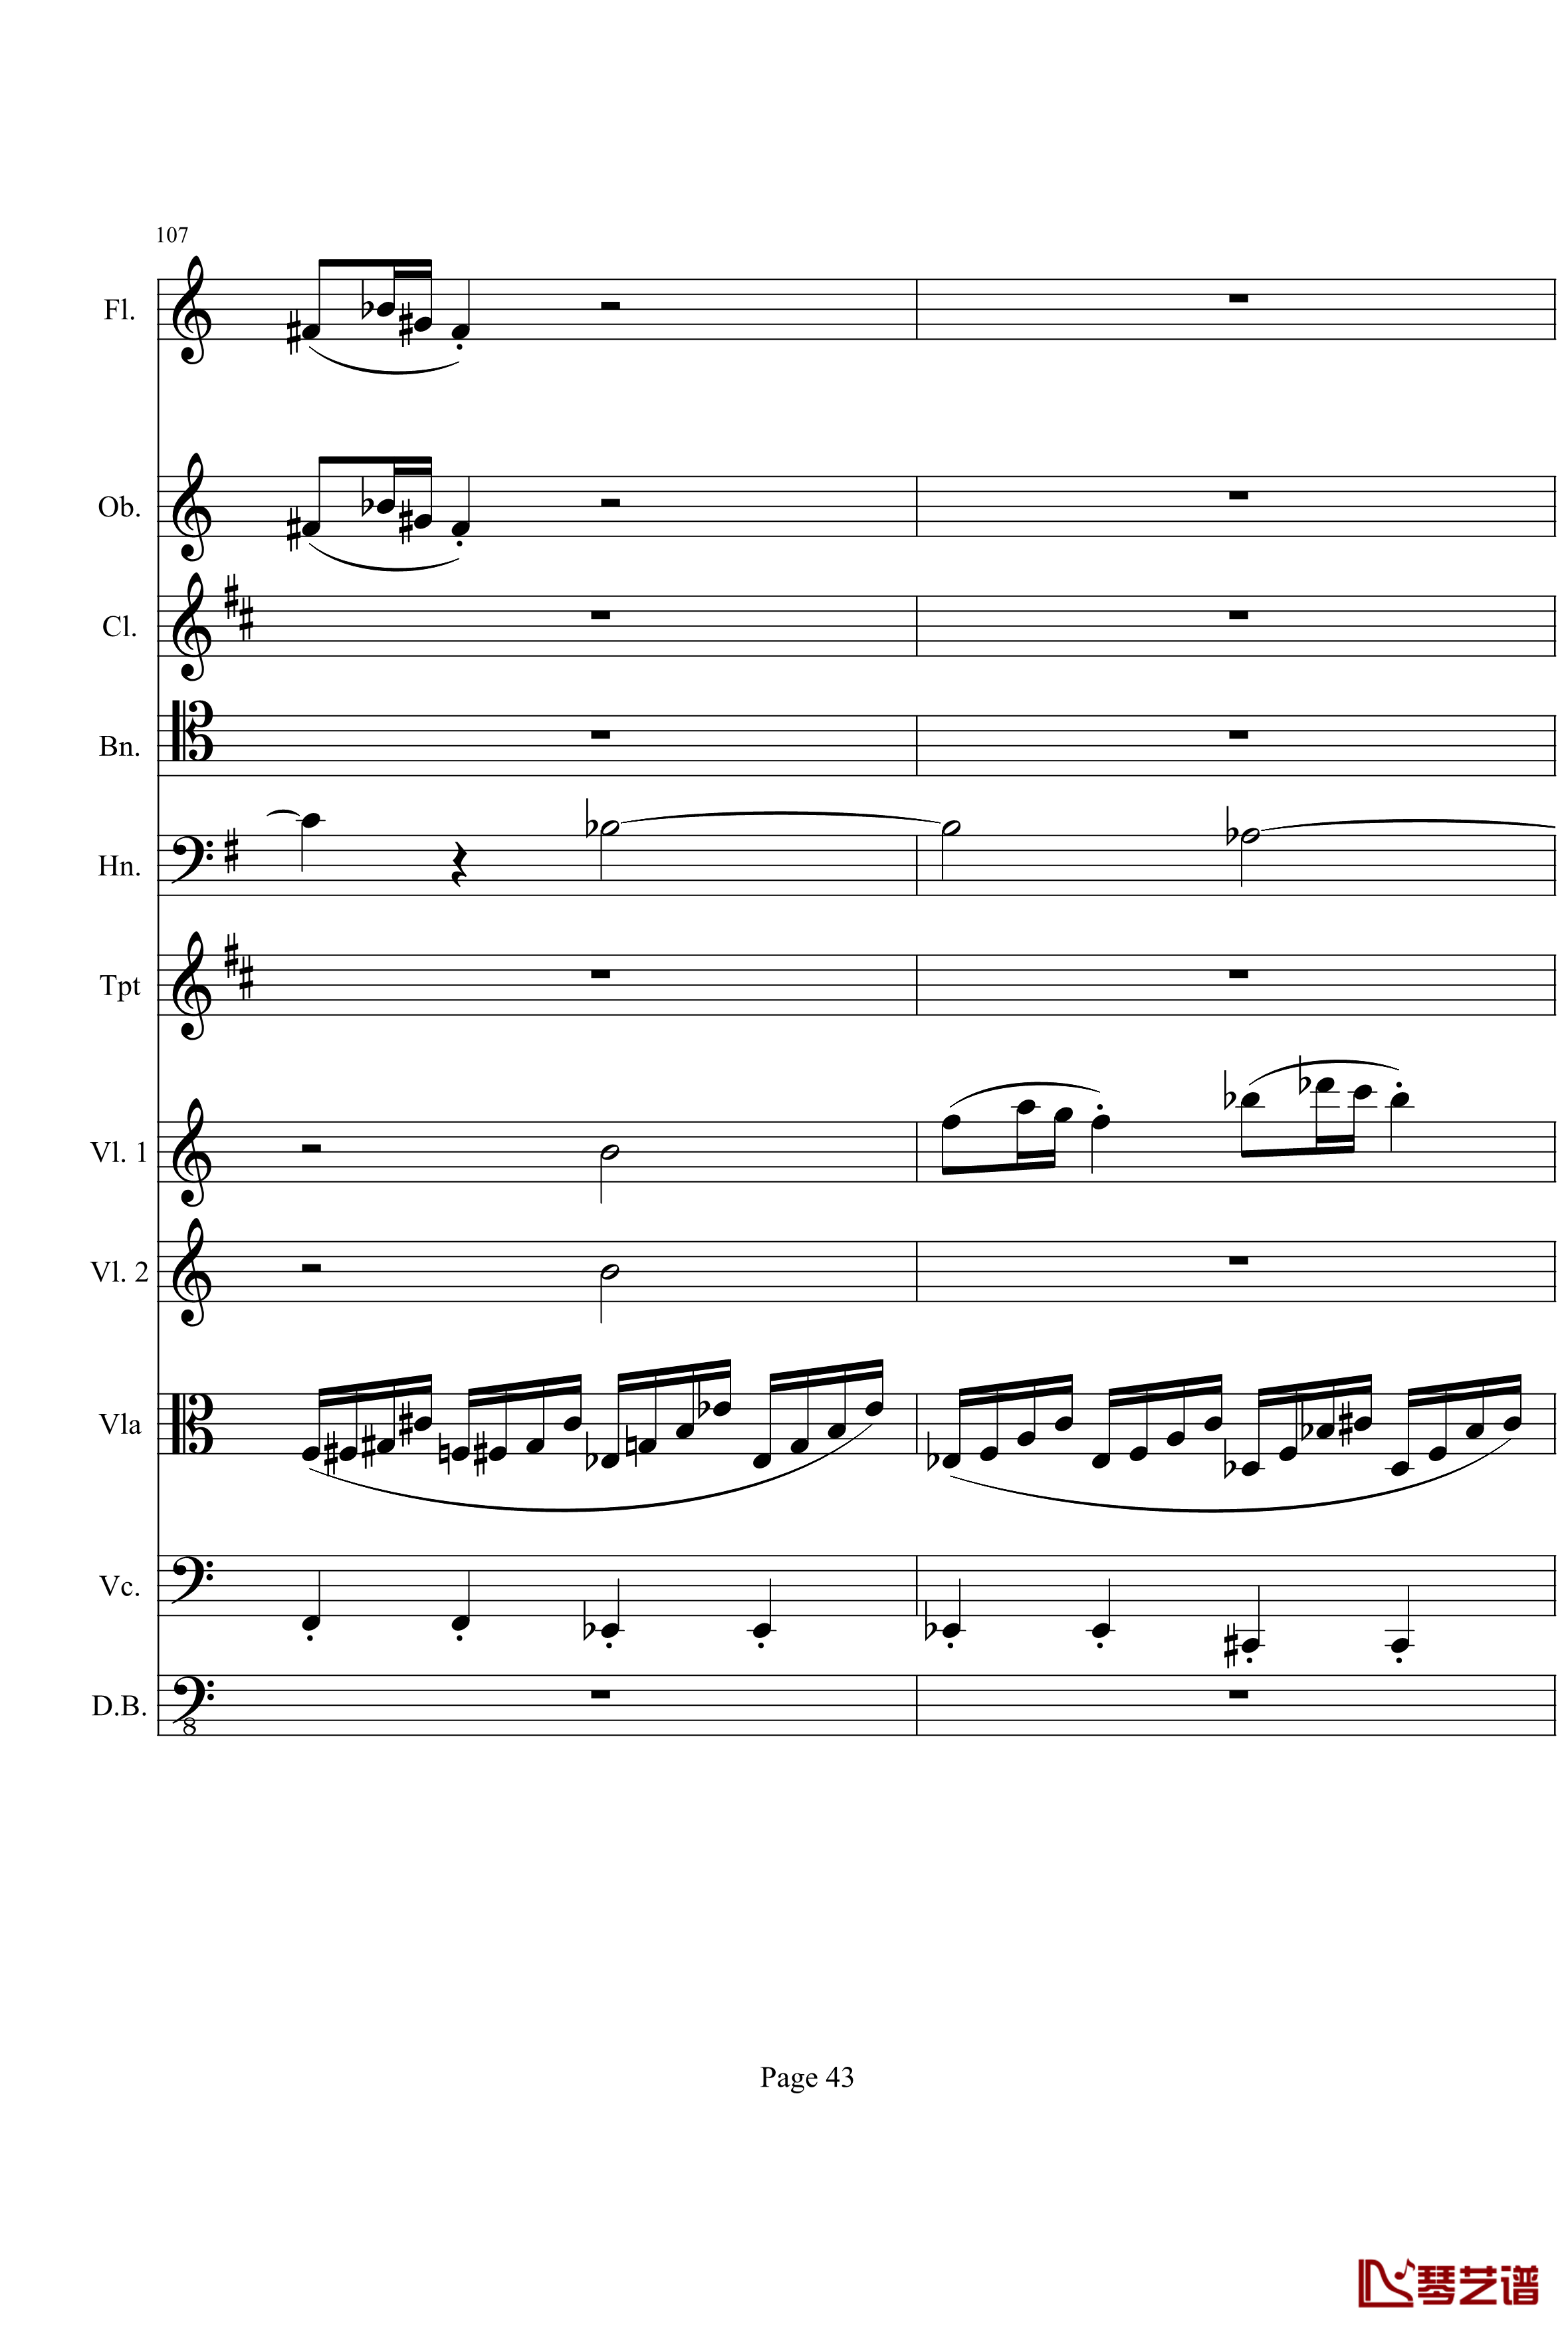 奏鸣曲之交响钢琴谱-第21-Ⅰ-贝多芬-beethoven43